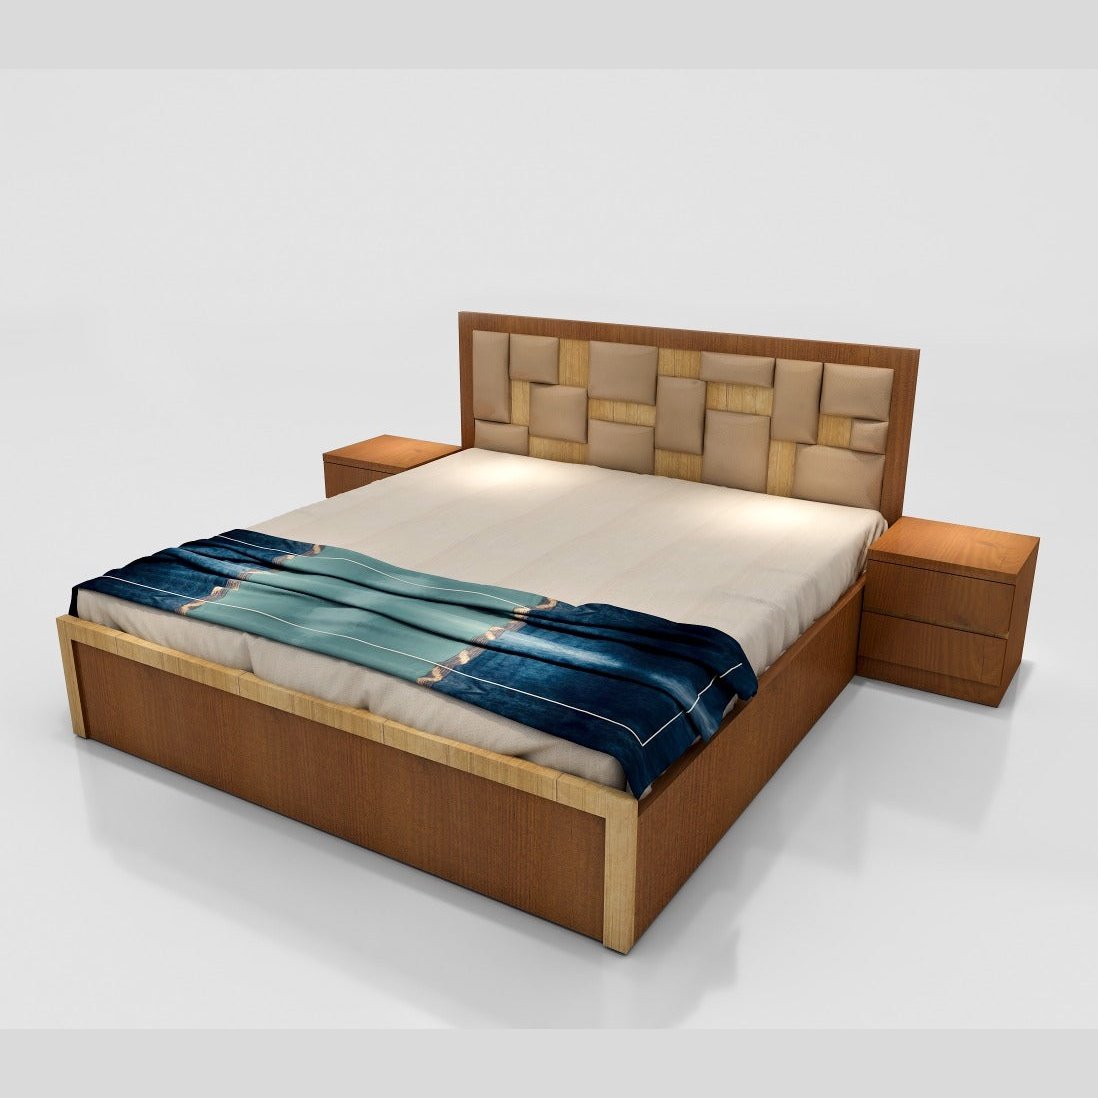 UW-2714 VERONA BEDROOM PACKAGE Mobel Furniture